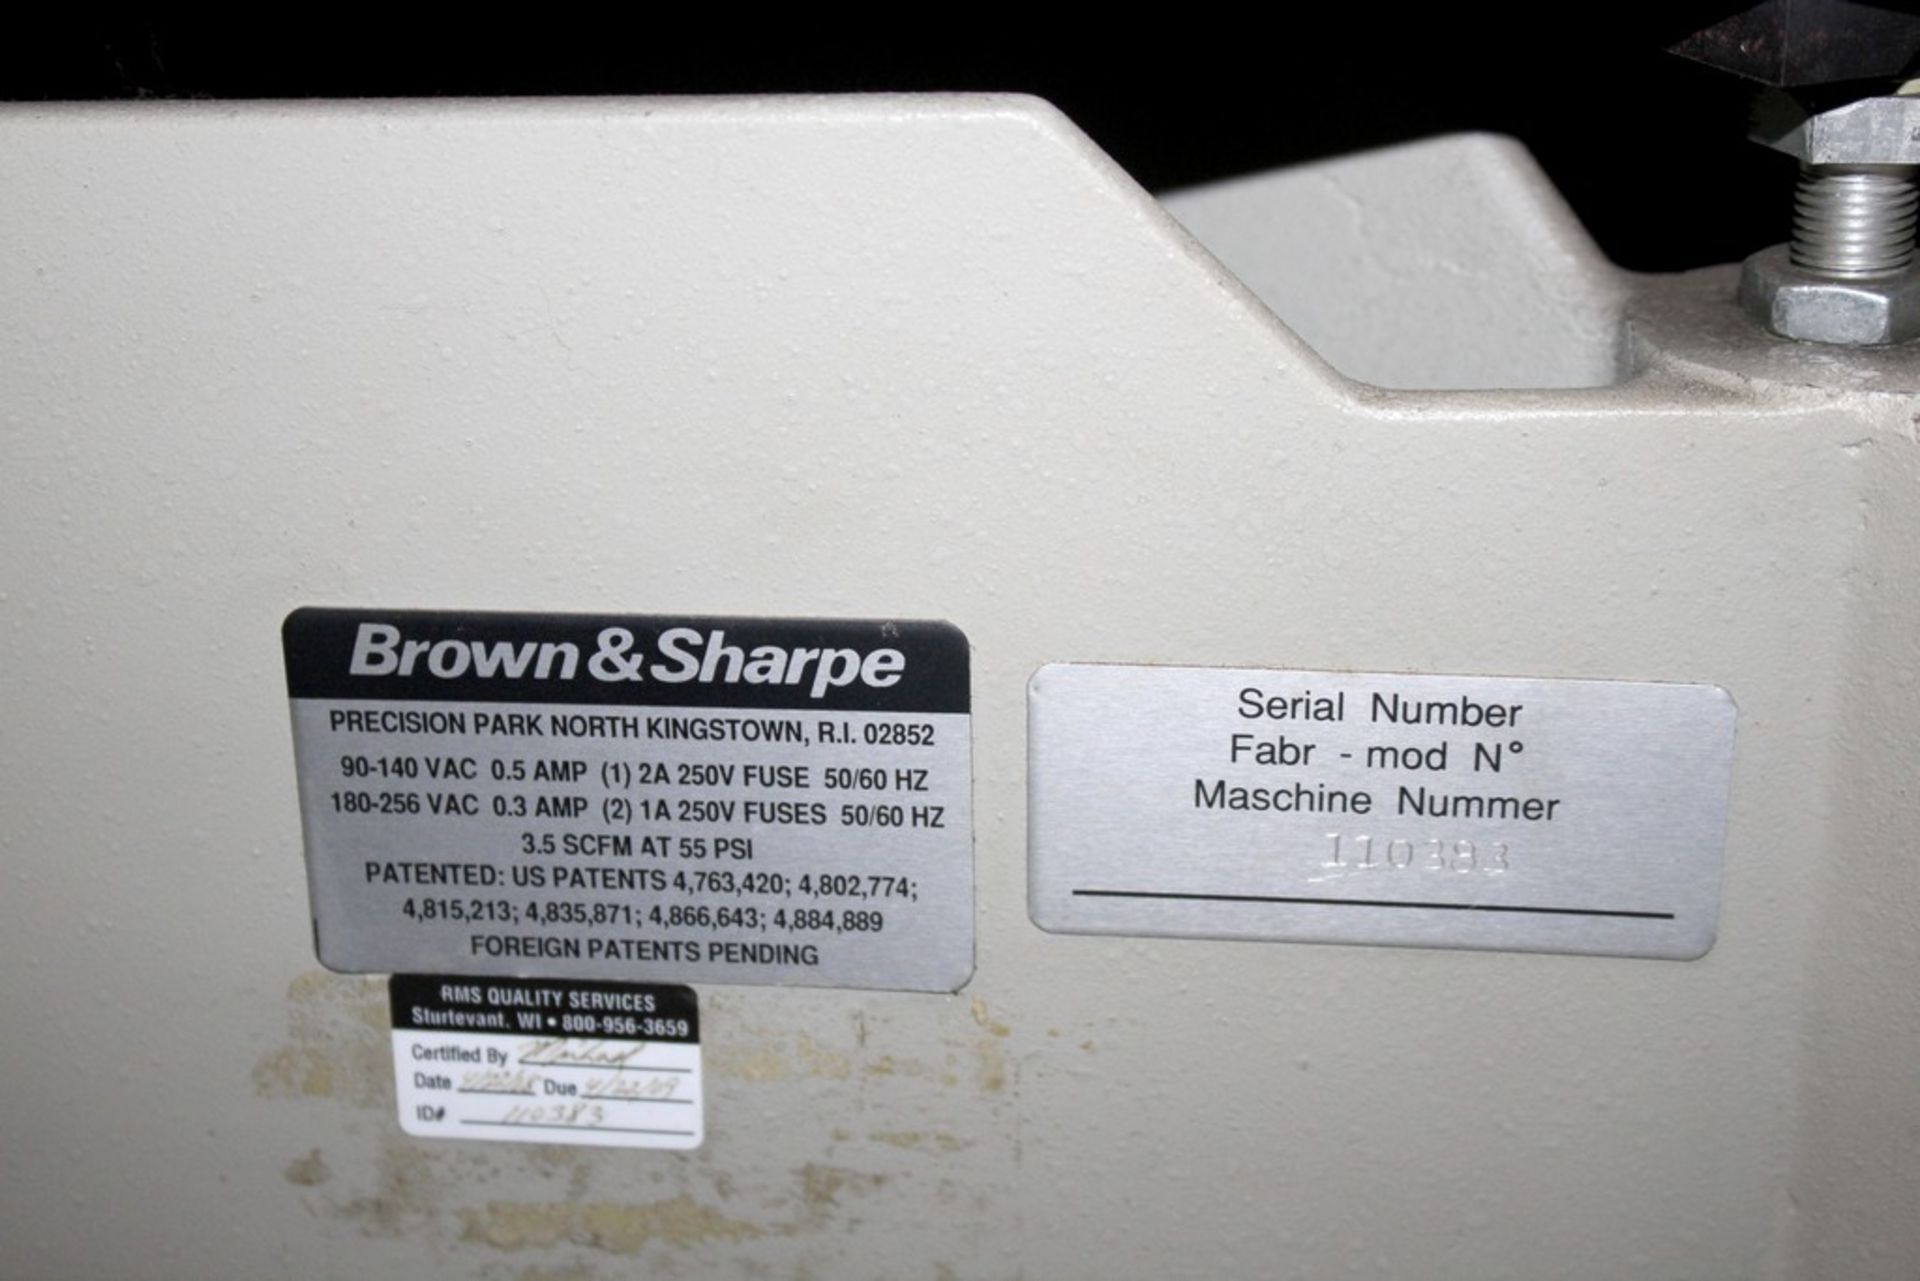 BROWN & SHARPE MODEL MICROVAL COORDINATE MEASURING MACHINE, S/N 110383, 21-1/2”X29-1/2” GRANITE - Image 8 of 8